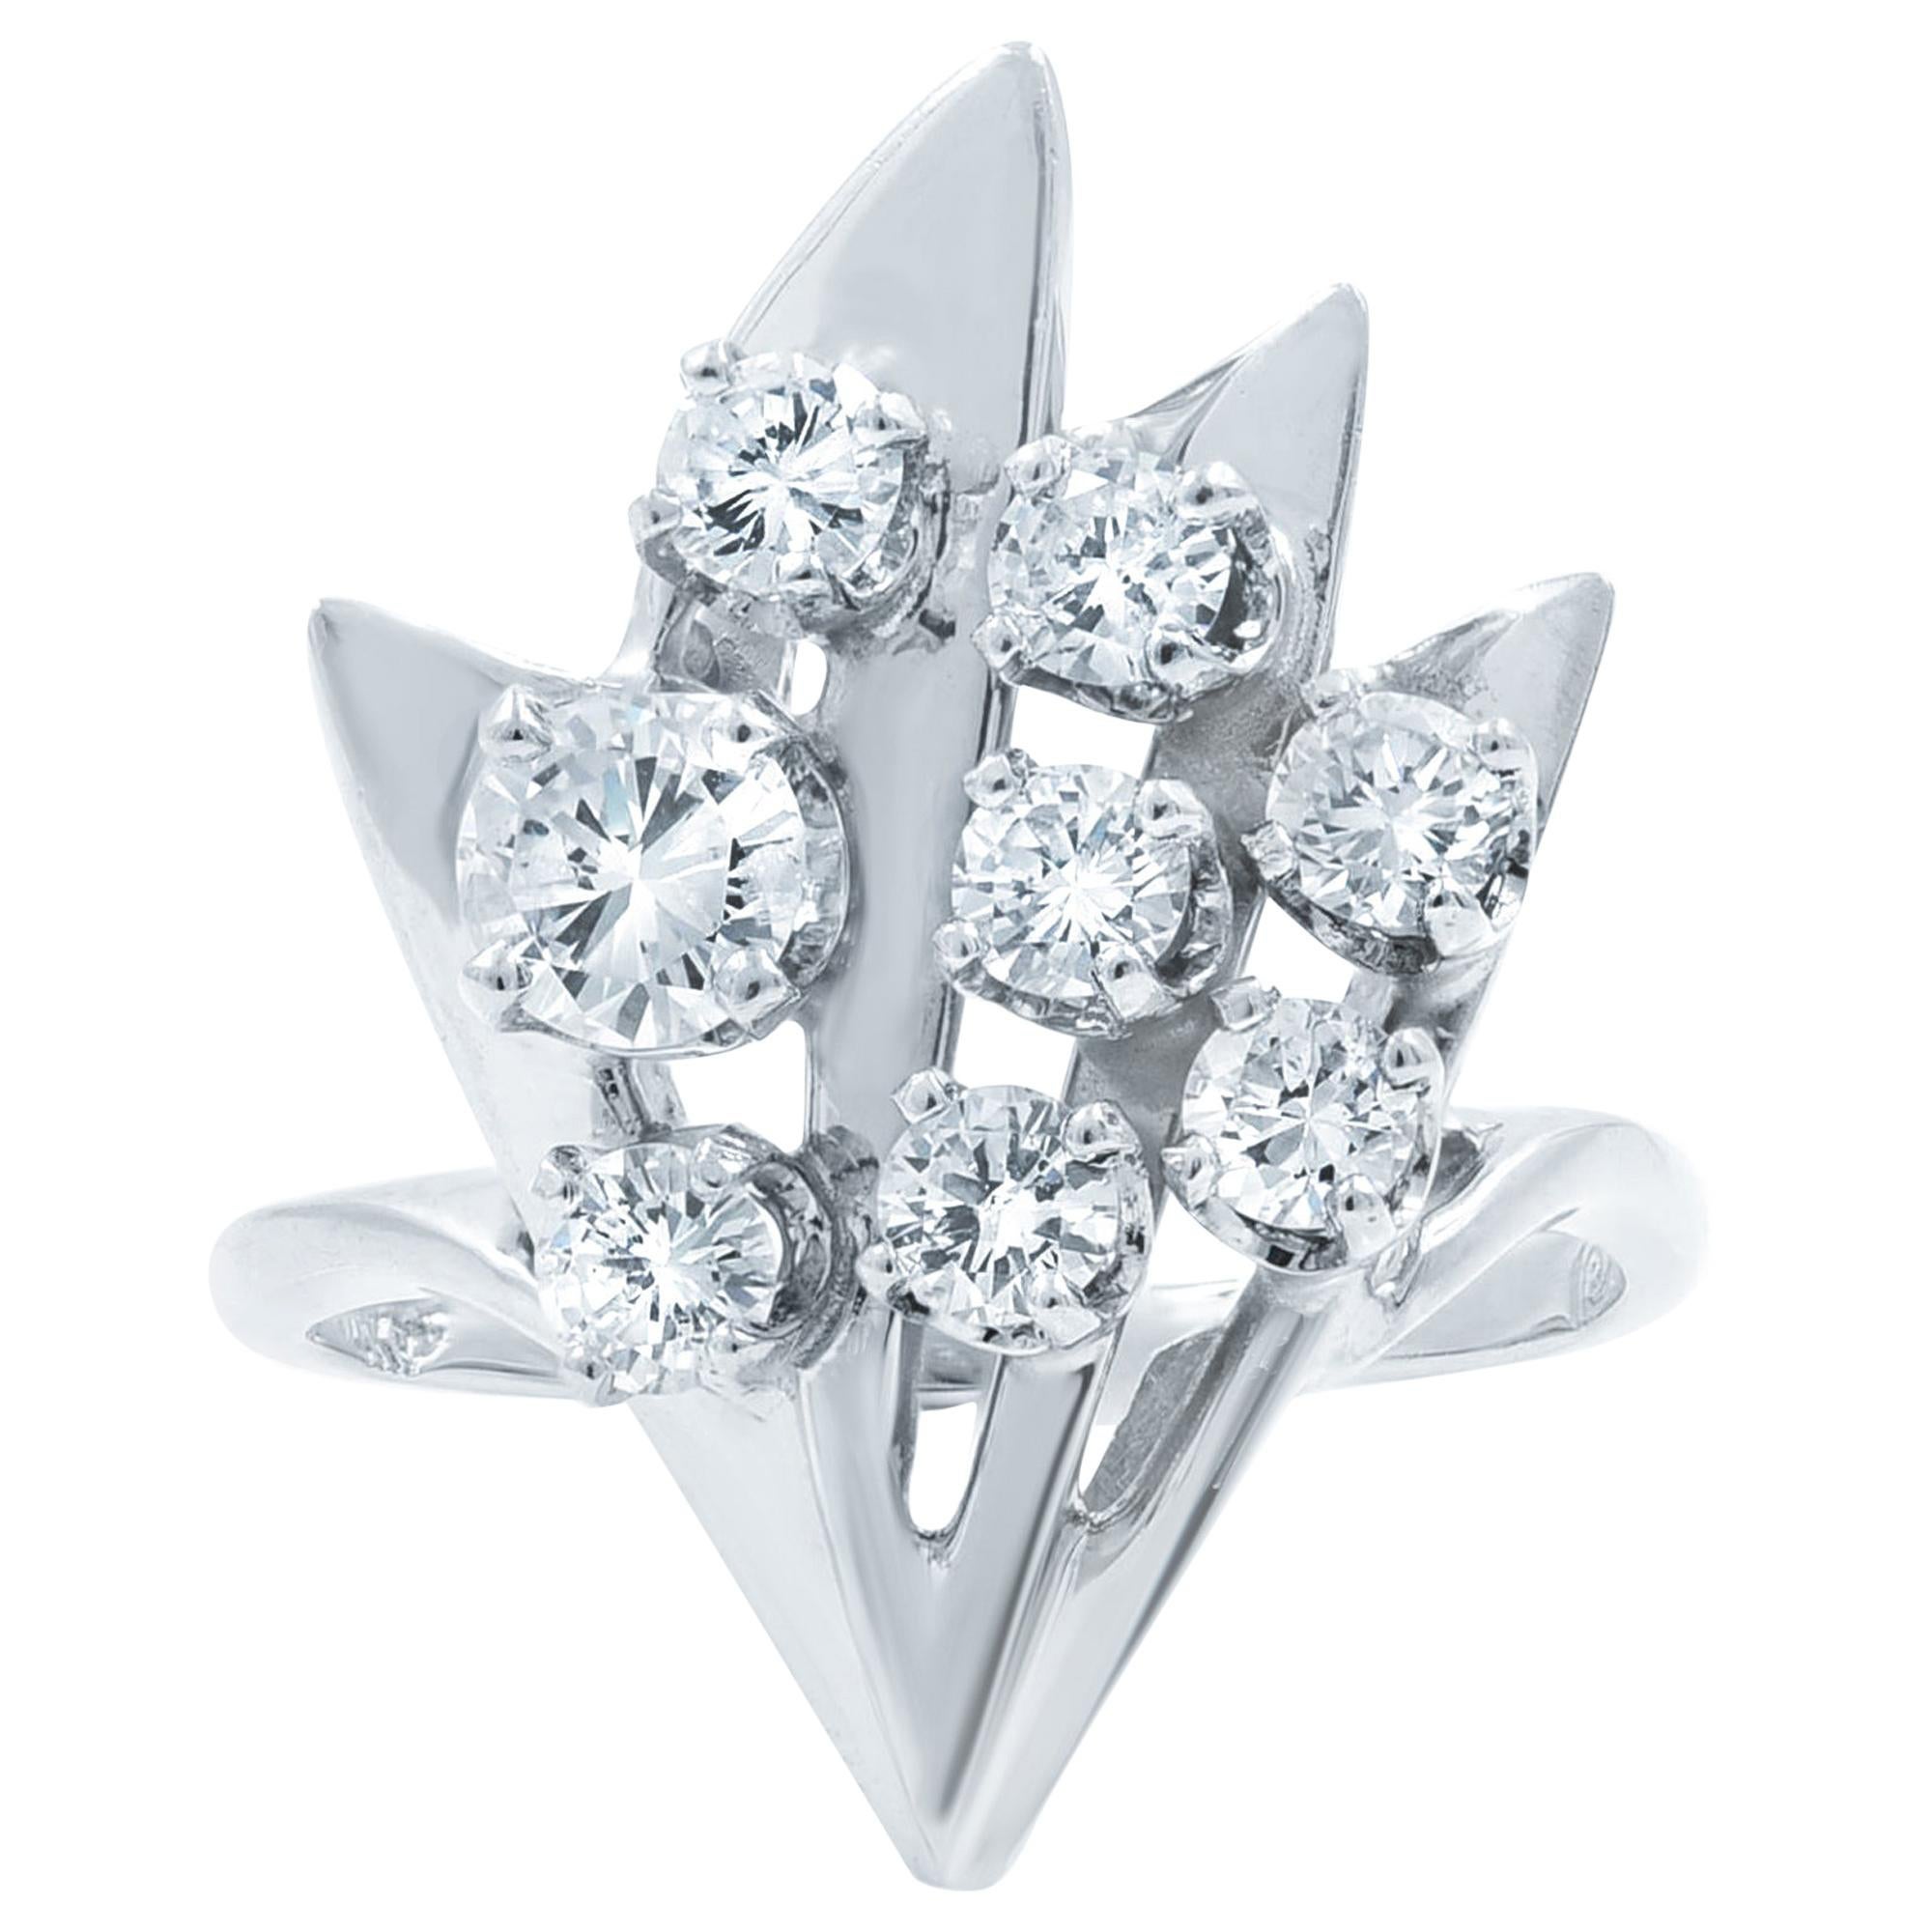 Rachel Koen Retro Eight Diamond Cluster Ring 14K White Gold 1.50Cttw